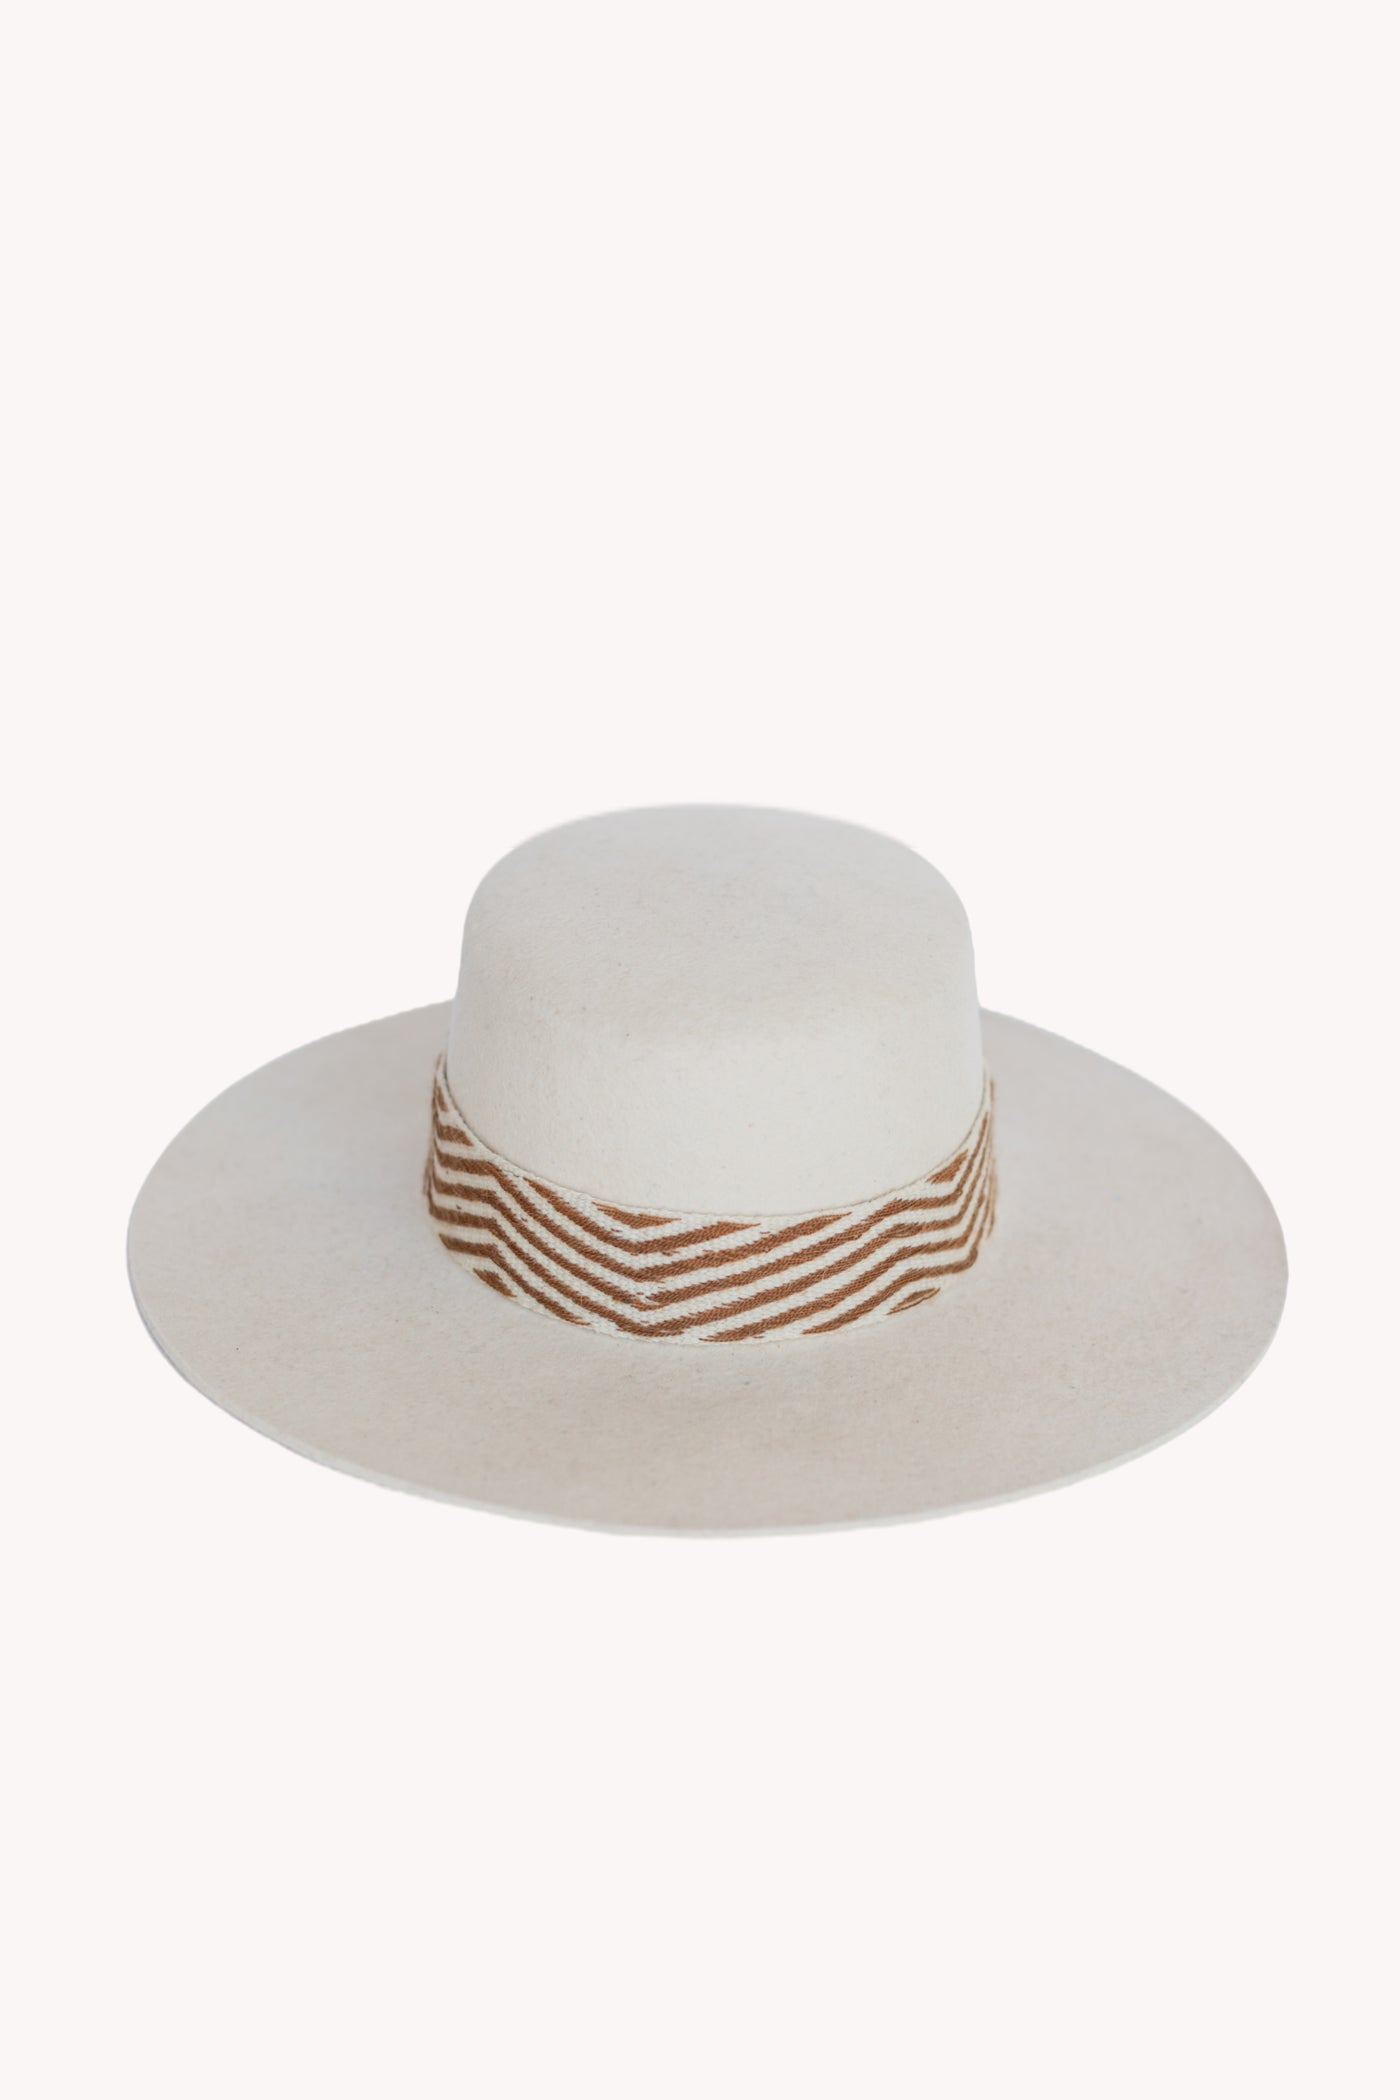 White Spanish style alpaca wool hat